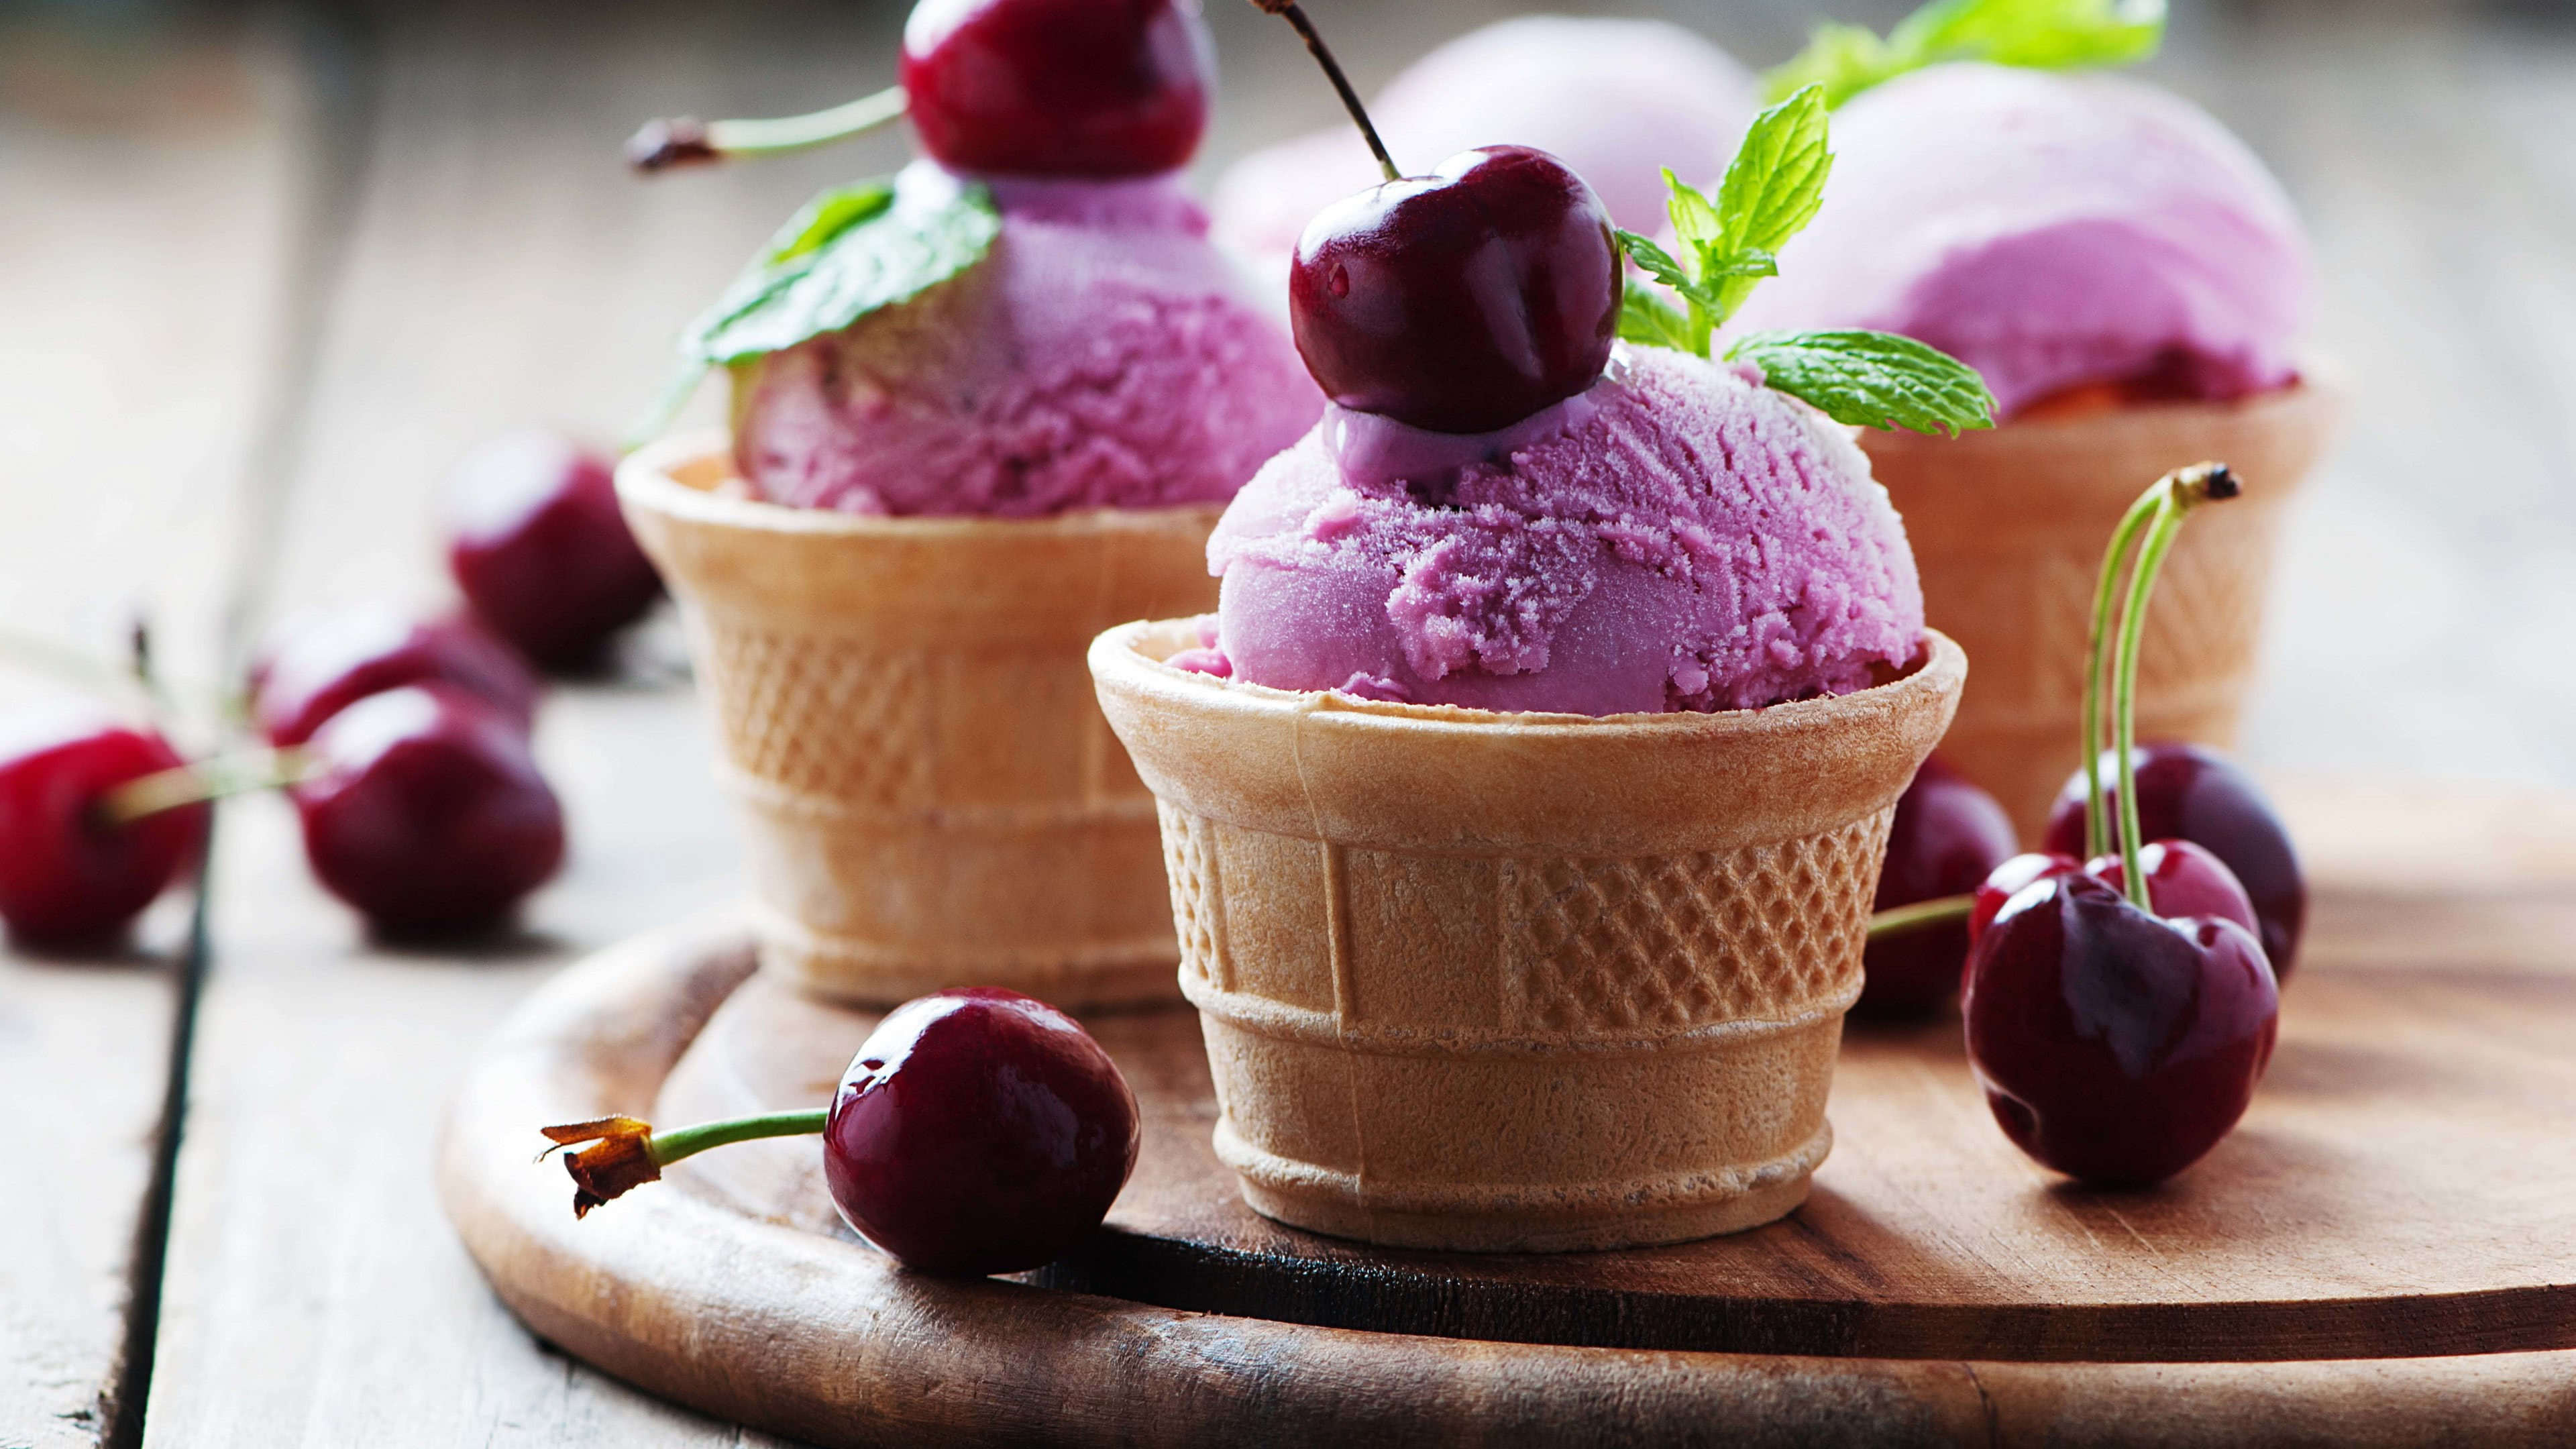 Gelato: A frozen creamy dessert made with milk, heavy cream, and sugar, Cherries. 3840x2160 4K Background.